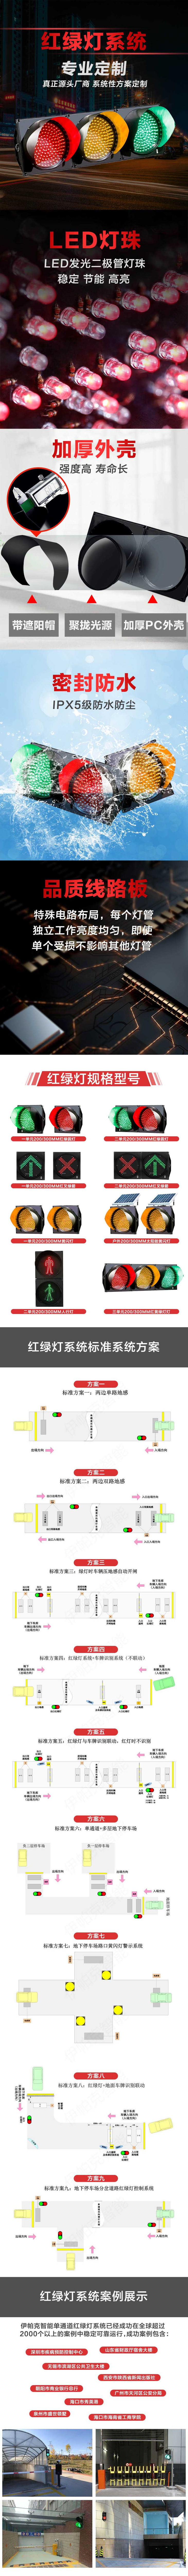 停车场红绿灯智能引导系统